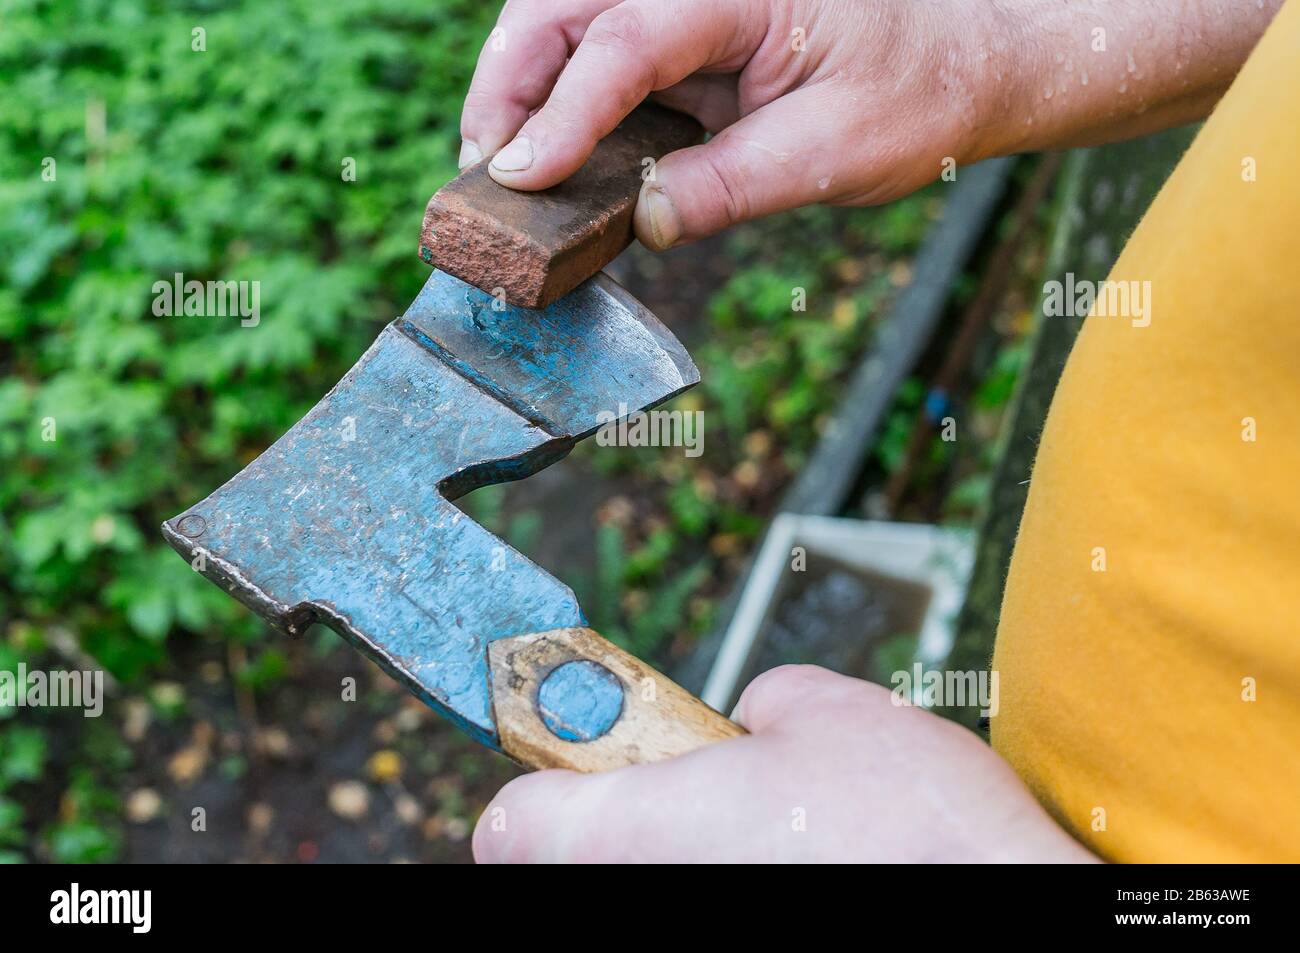 Ein Mann schärft eine Axt mit einem Schleifstein Stockfotografie - Alamy